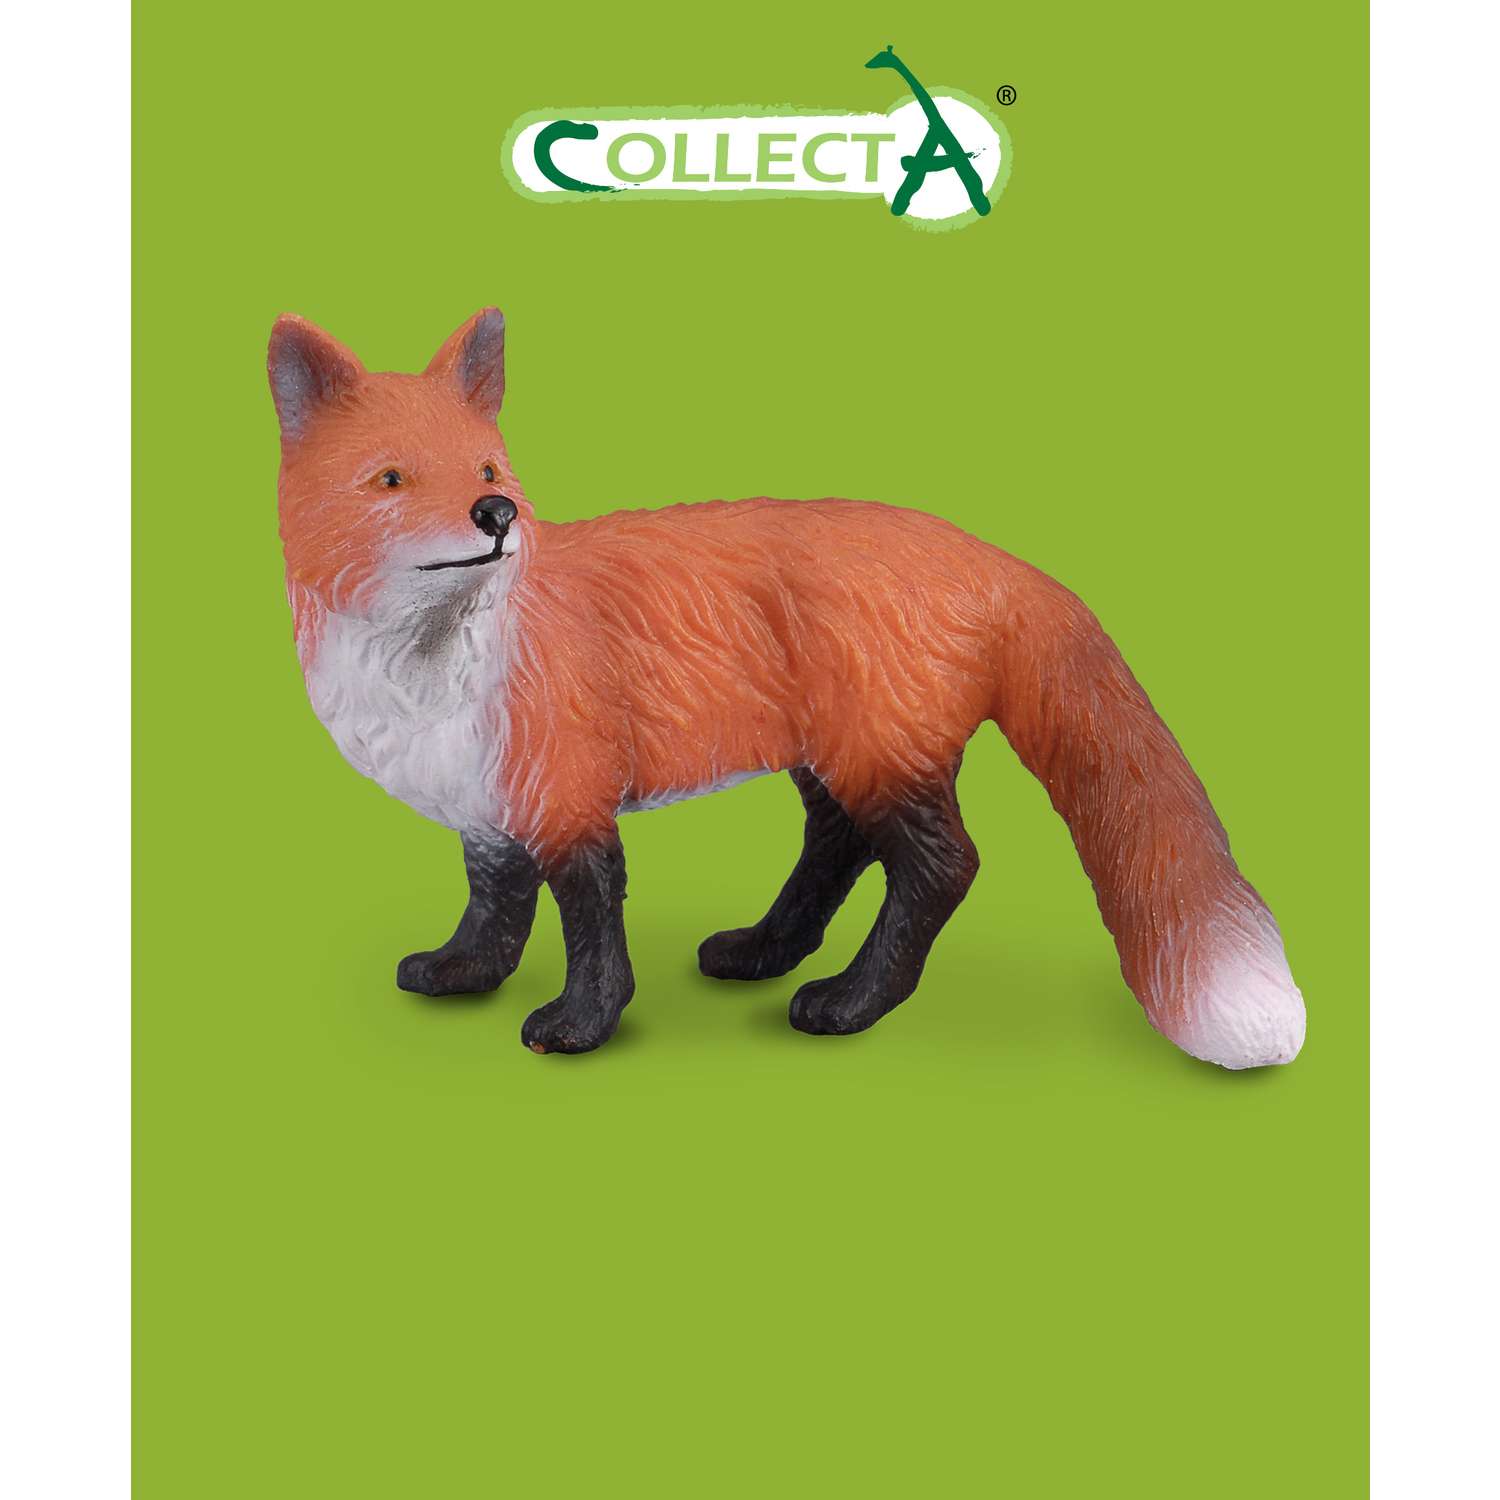 Фигурка животного Collecta Рыжая лисица - фото 1